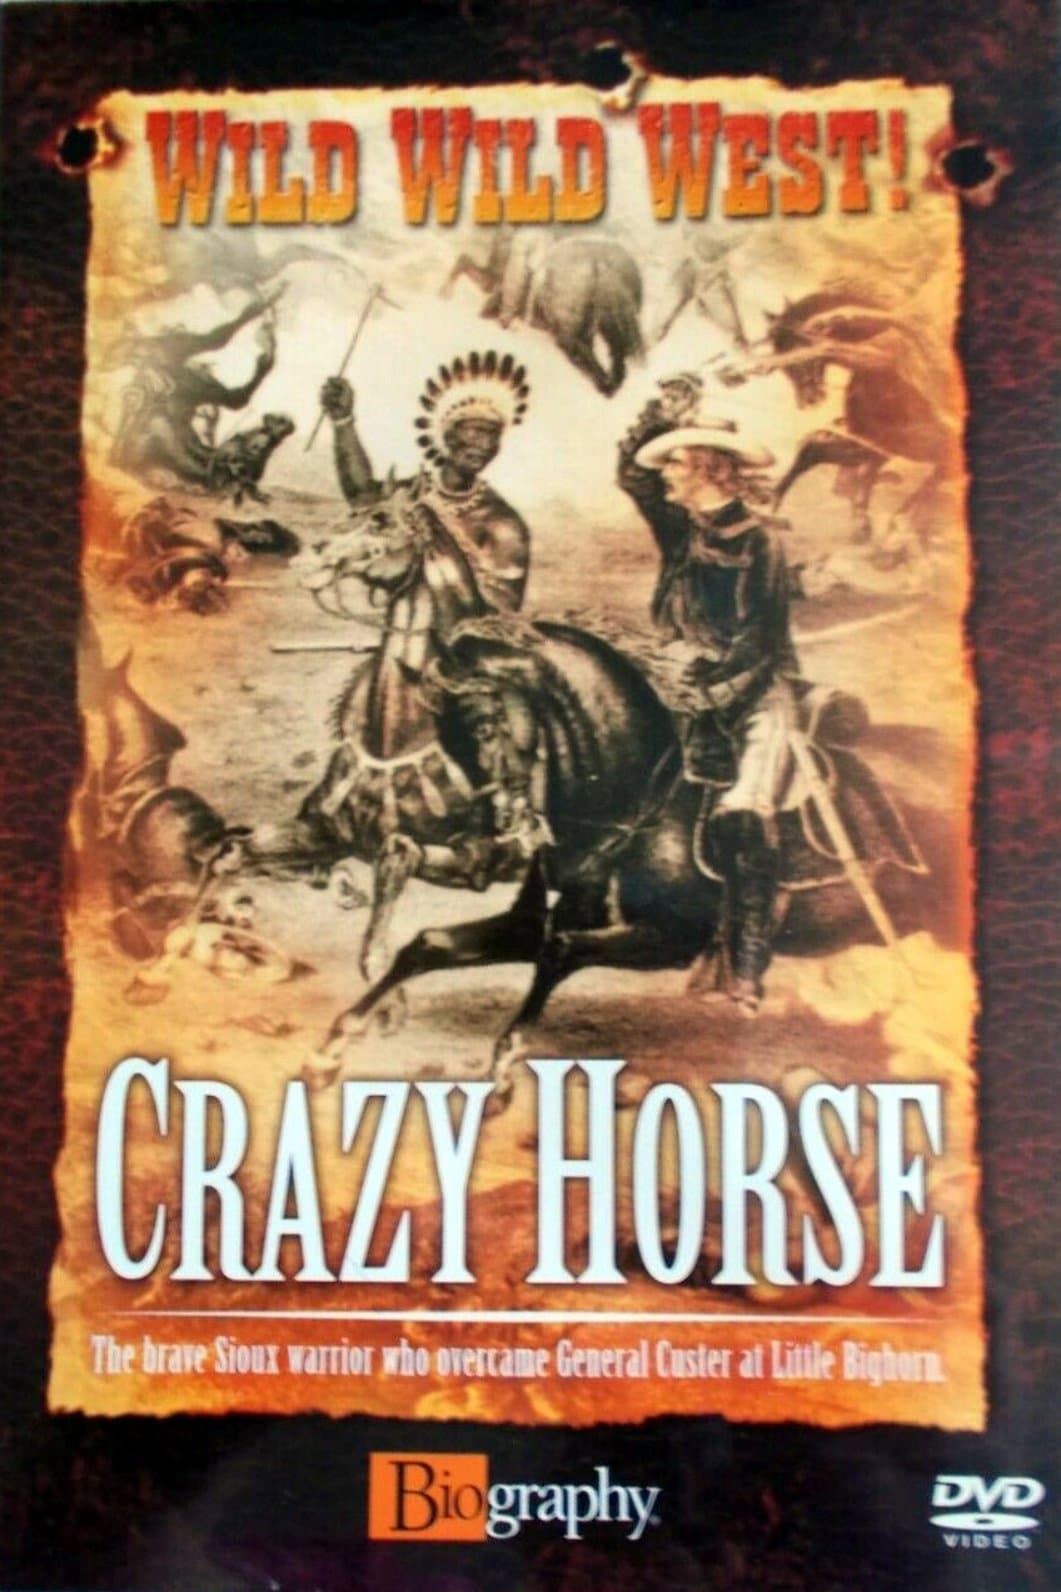 Wild Wild West: Crazy Horse